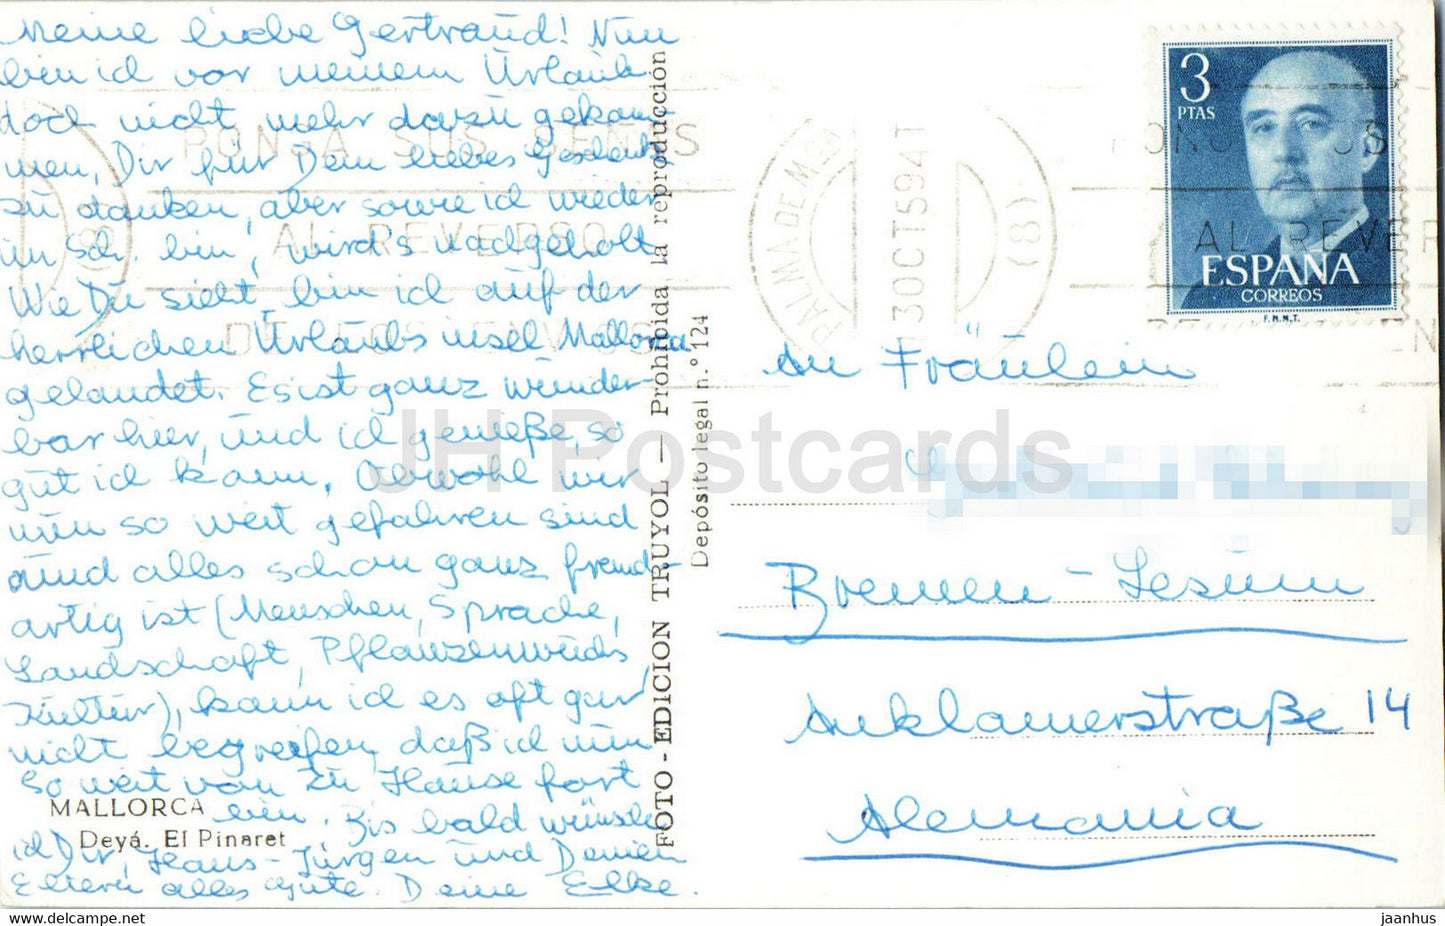 Majorque - Deya - El Pinaret - carte postale ancienne - 1959 - Espagne - utilisé